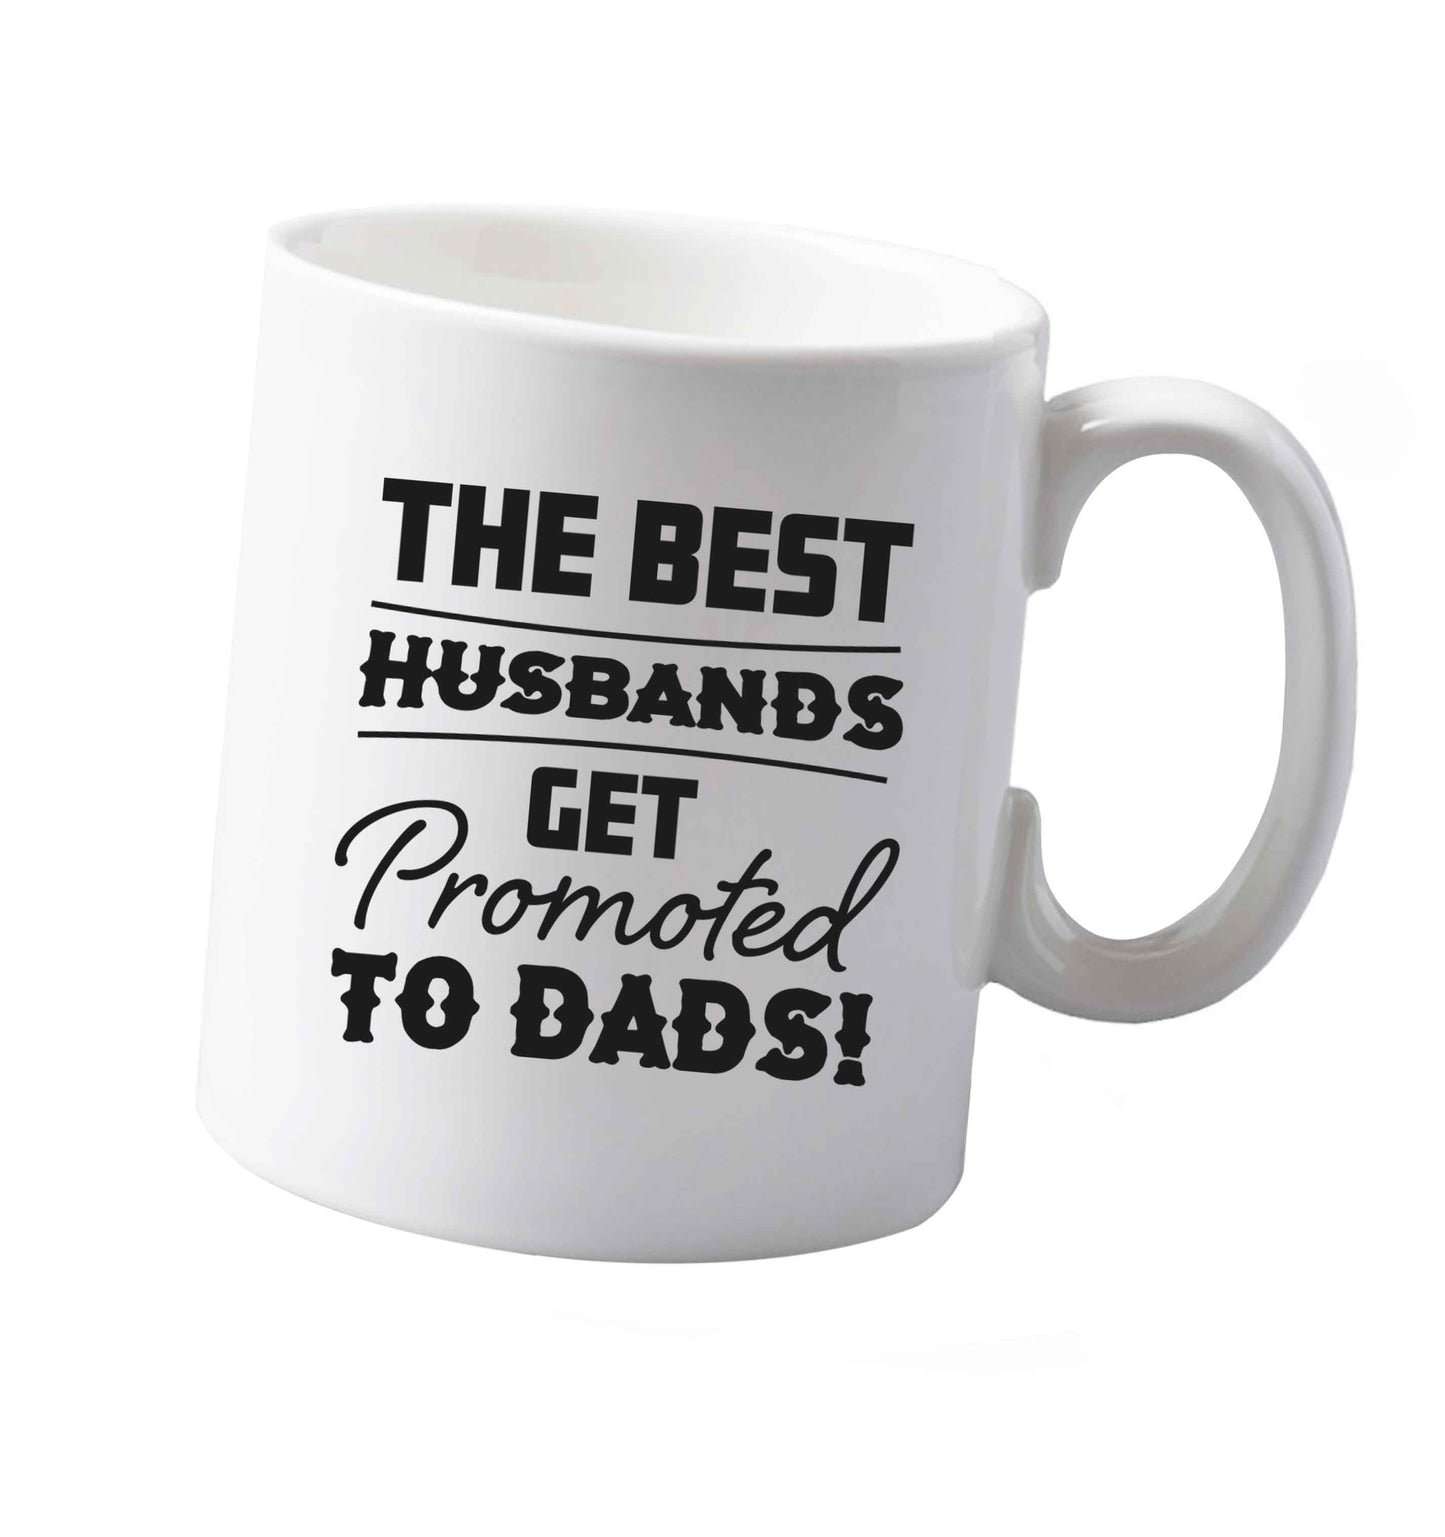 10 oz The best husbands get promoted to Dads ceramic mug both sides